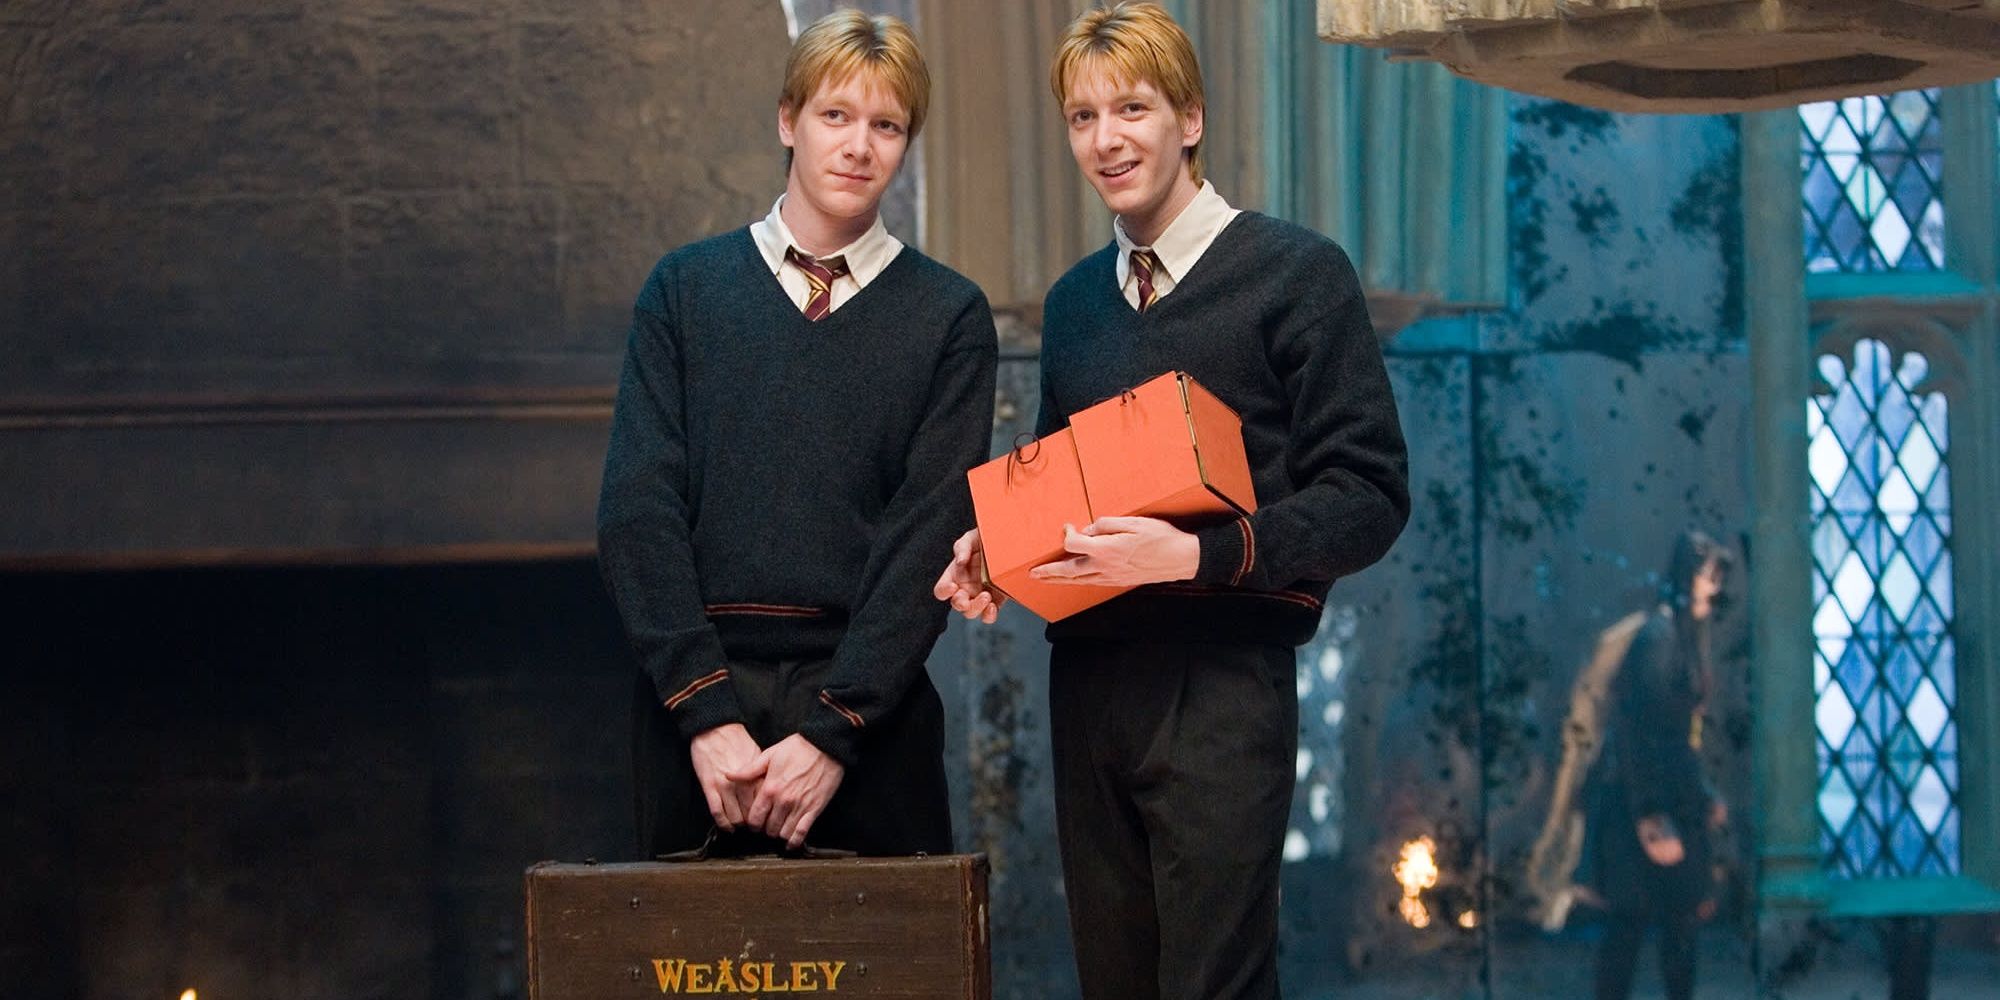 fred et george weasley souriant dans harry potter en tenant un étui weasley